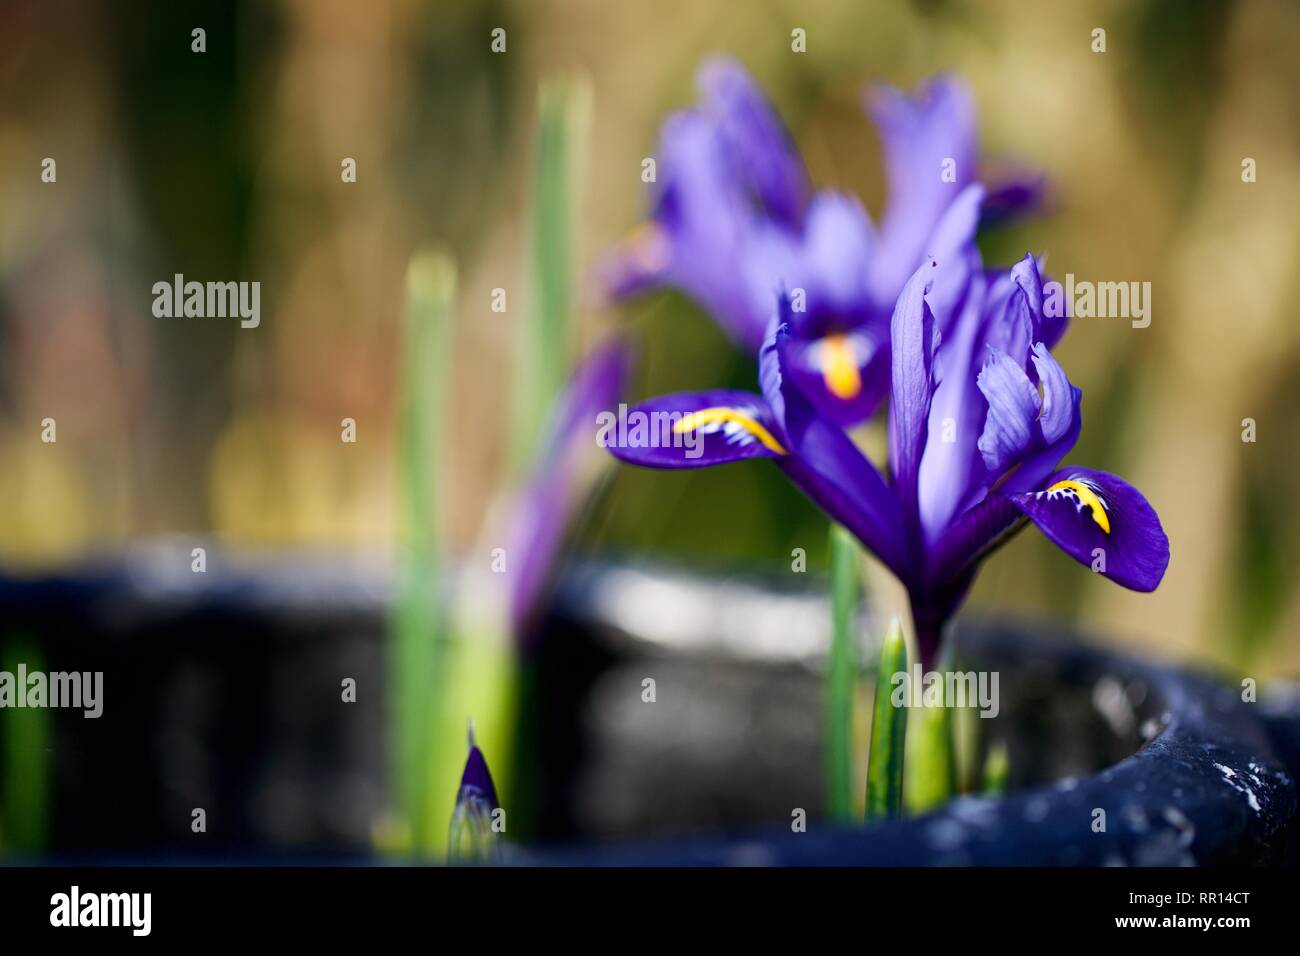 Iris reticulata 'Harmony' Stock Photo